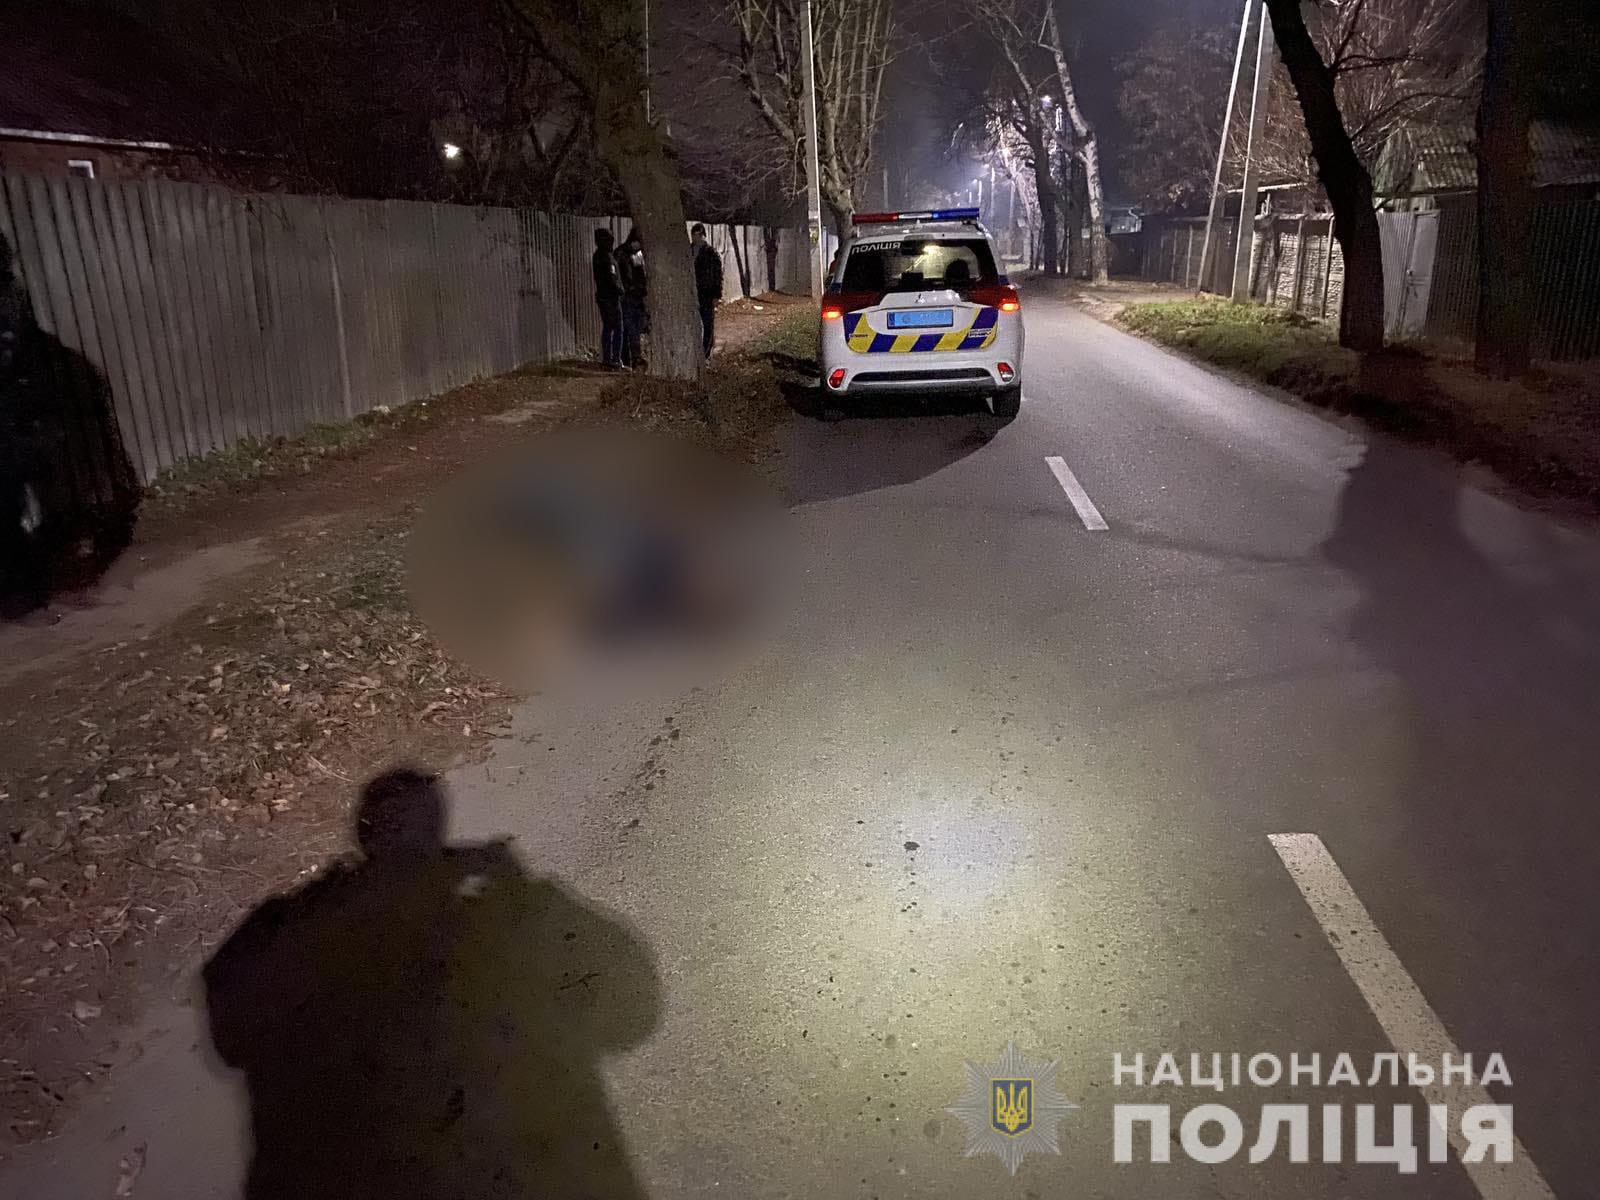 ДТП Харьков: 18-летний парень на Daewoo Lanos задавил лежавшего мужчину в Дергачах